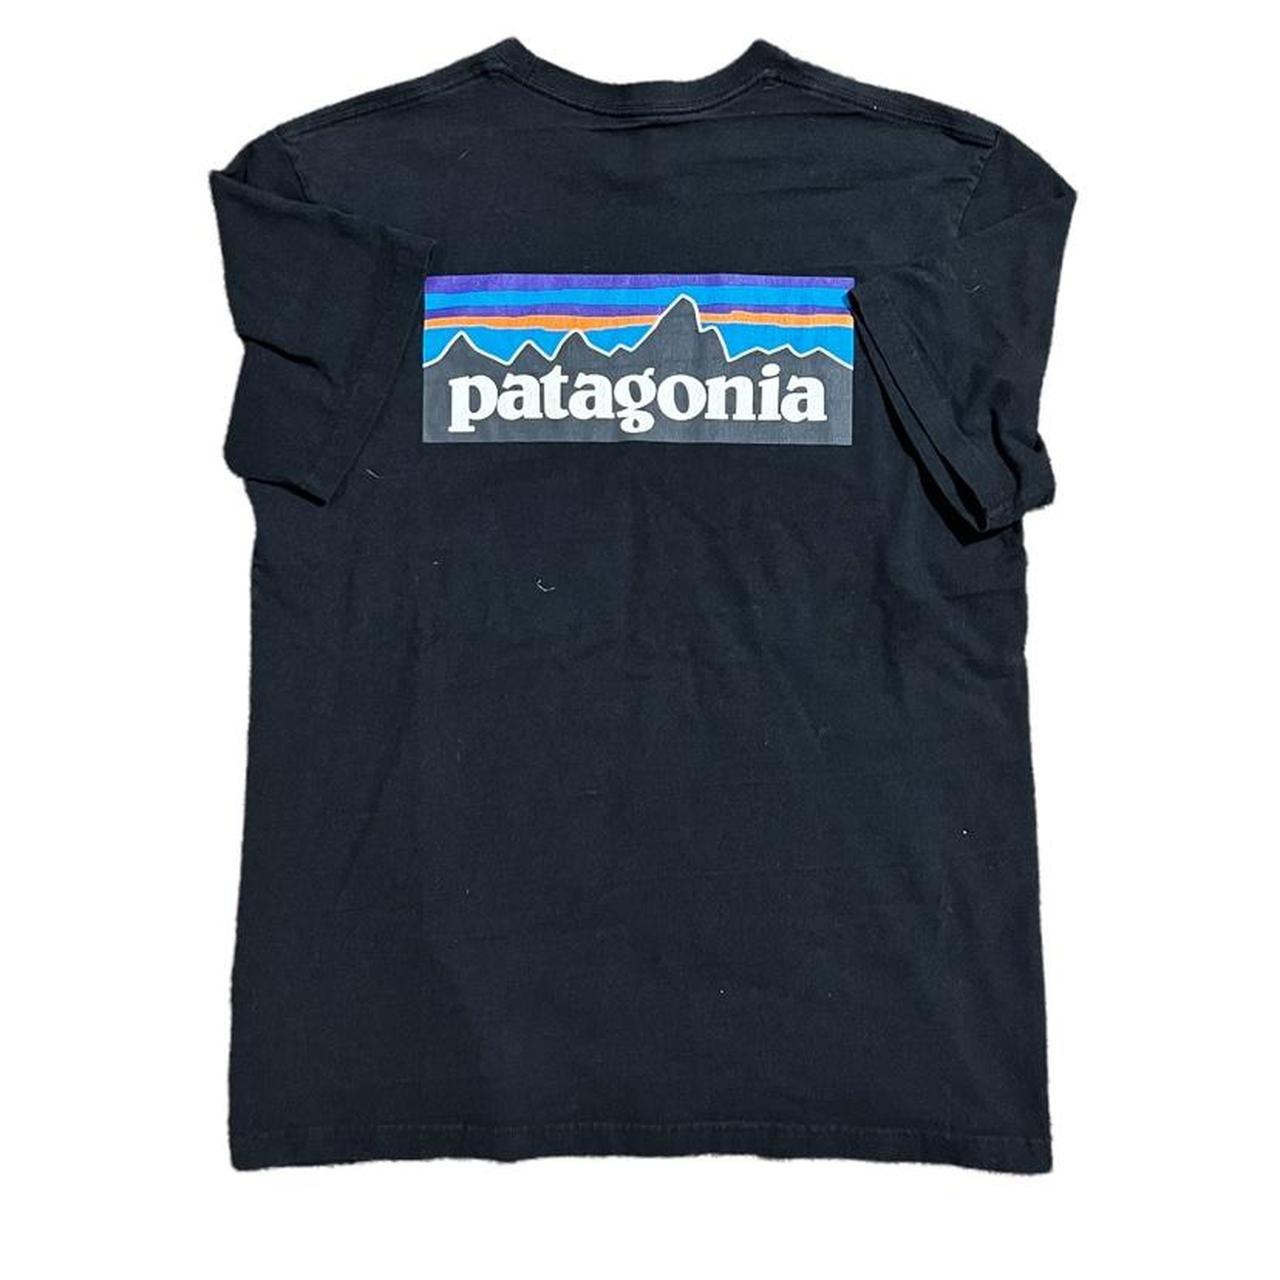 Vintage modern y2k patagonia essential t shirt Sz... - Depop